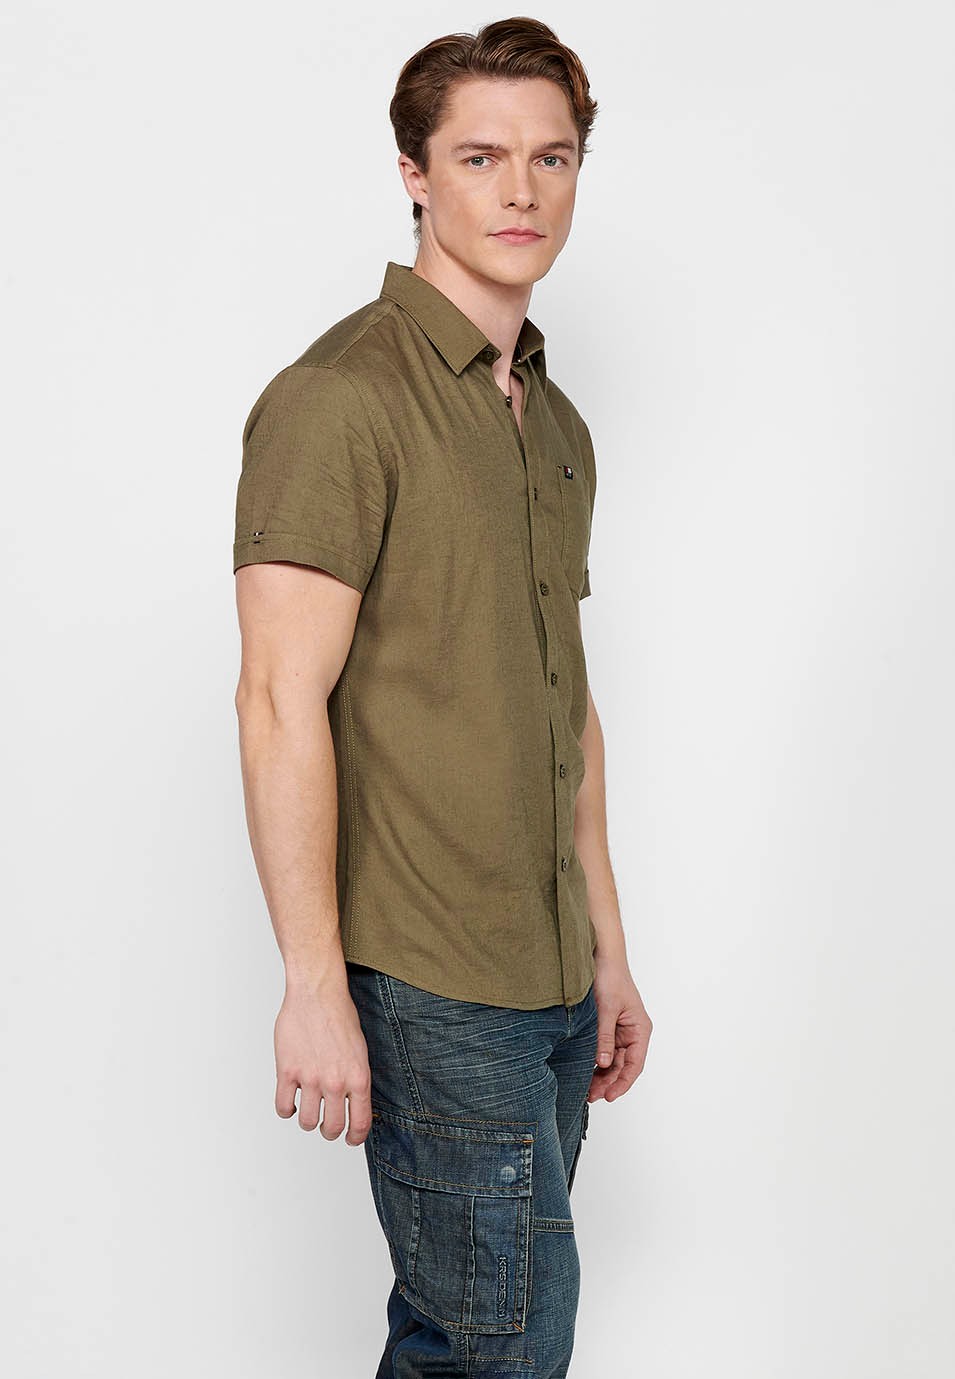 Short Sleeve Linen Shirt, khaki color, for men 7